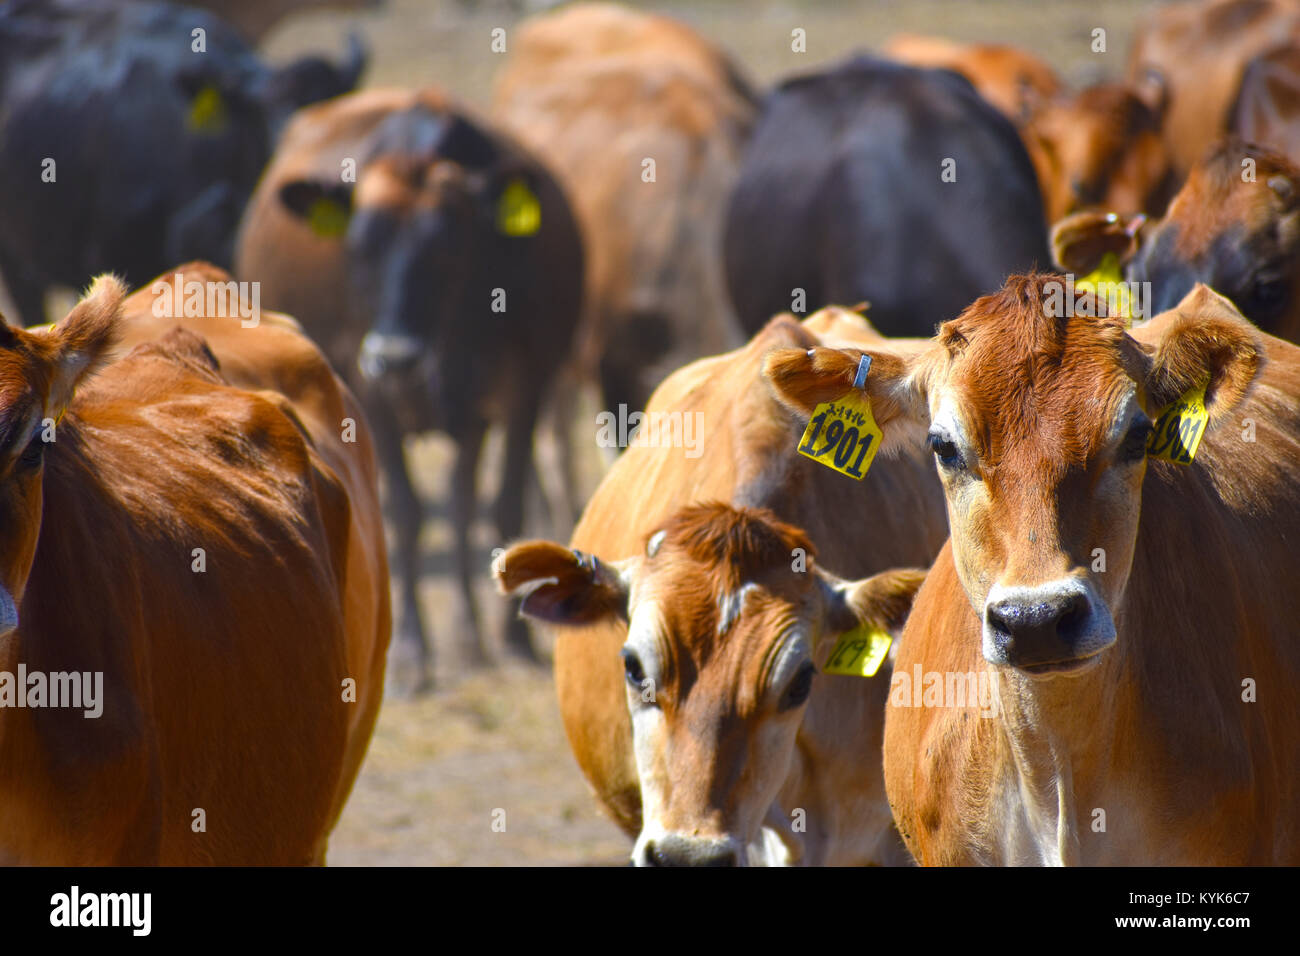 El enfoque selectivo a la vaca 1901 - todas las demás vacas están fuera de foco. Una manada de ganado vacuno en un rancho en Ferndale, Washington, EE.UU. Las vacas tienen etiquetas de identificación. Foto de stock